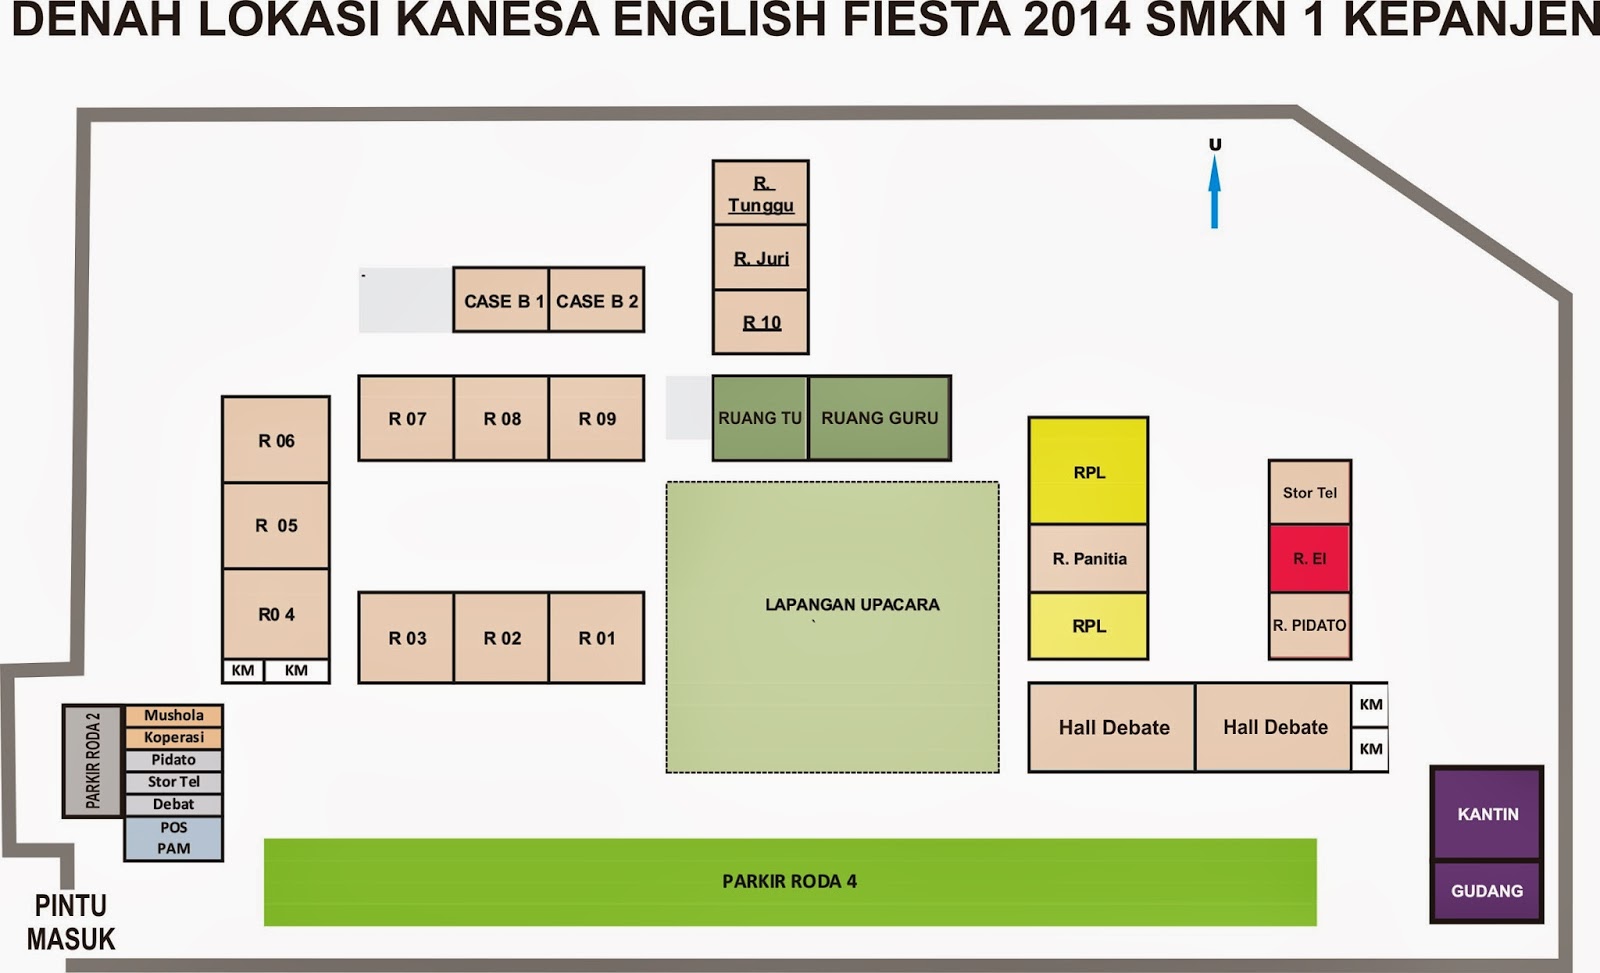 Kanesa English Fiesta 2014 Denah Sekolah Smkn 1 Kepanjen